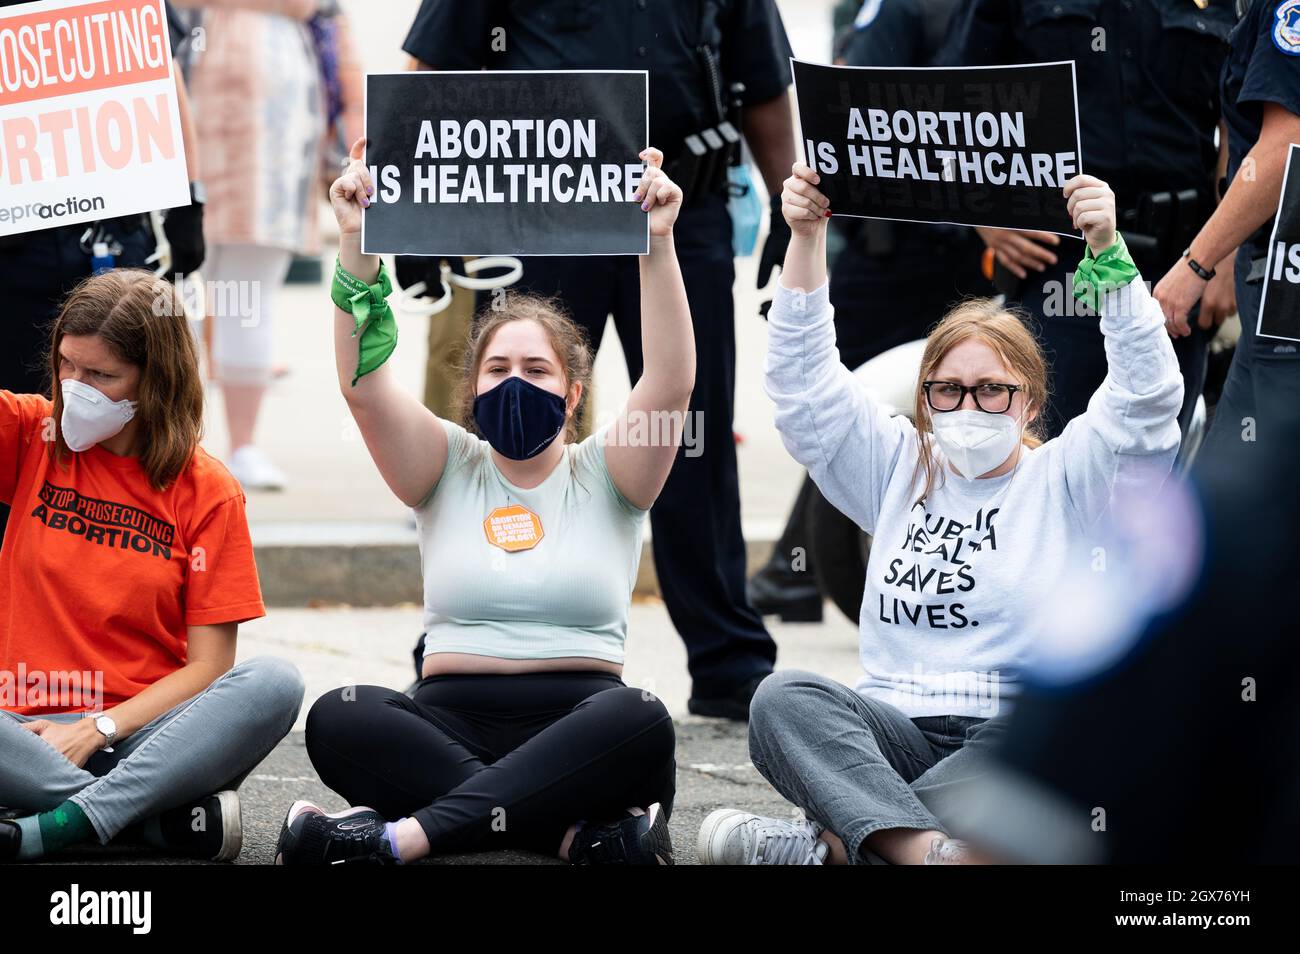 Washington, Estados Unidos. 04th Oct, 2021. Durante una manifestación, los manifestantes muestran que el aborto es asistencia sanitaria. Los manifestantes pro-vida y pro-elección se congregan frente a la Corte Suprema. Crédito: SOPA Images Limited/Alamy Live News Foto de stock